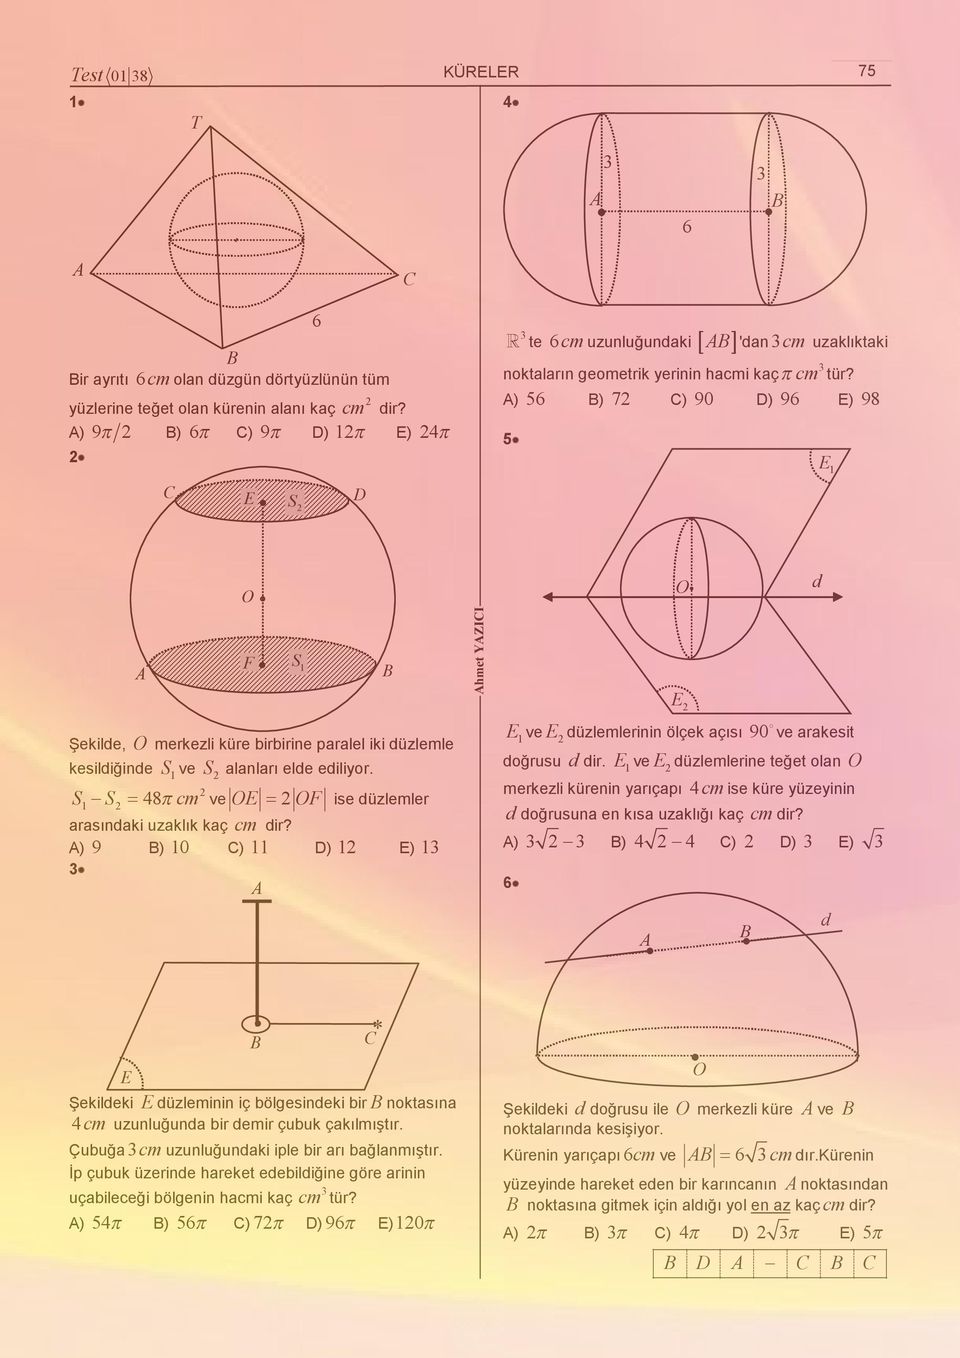 ) 5 ) 7 ) 90 D) 9 E) 98 5 E 1 d F S 1 hmet YZII E Şekilde, merkezli küre birbirine paralel iki düzlemle kesildiğinde S1 ve S alanları elde edilior.